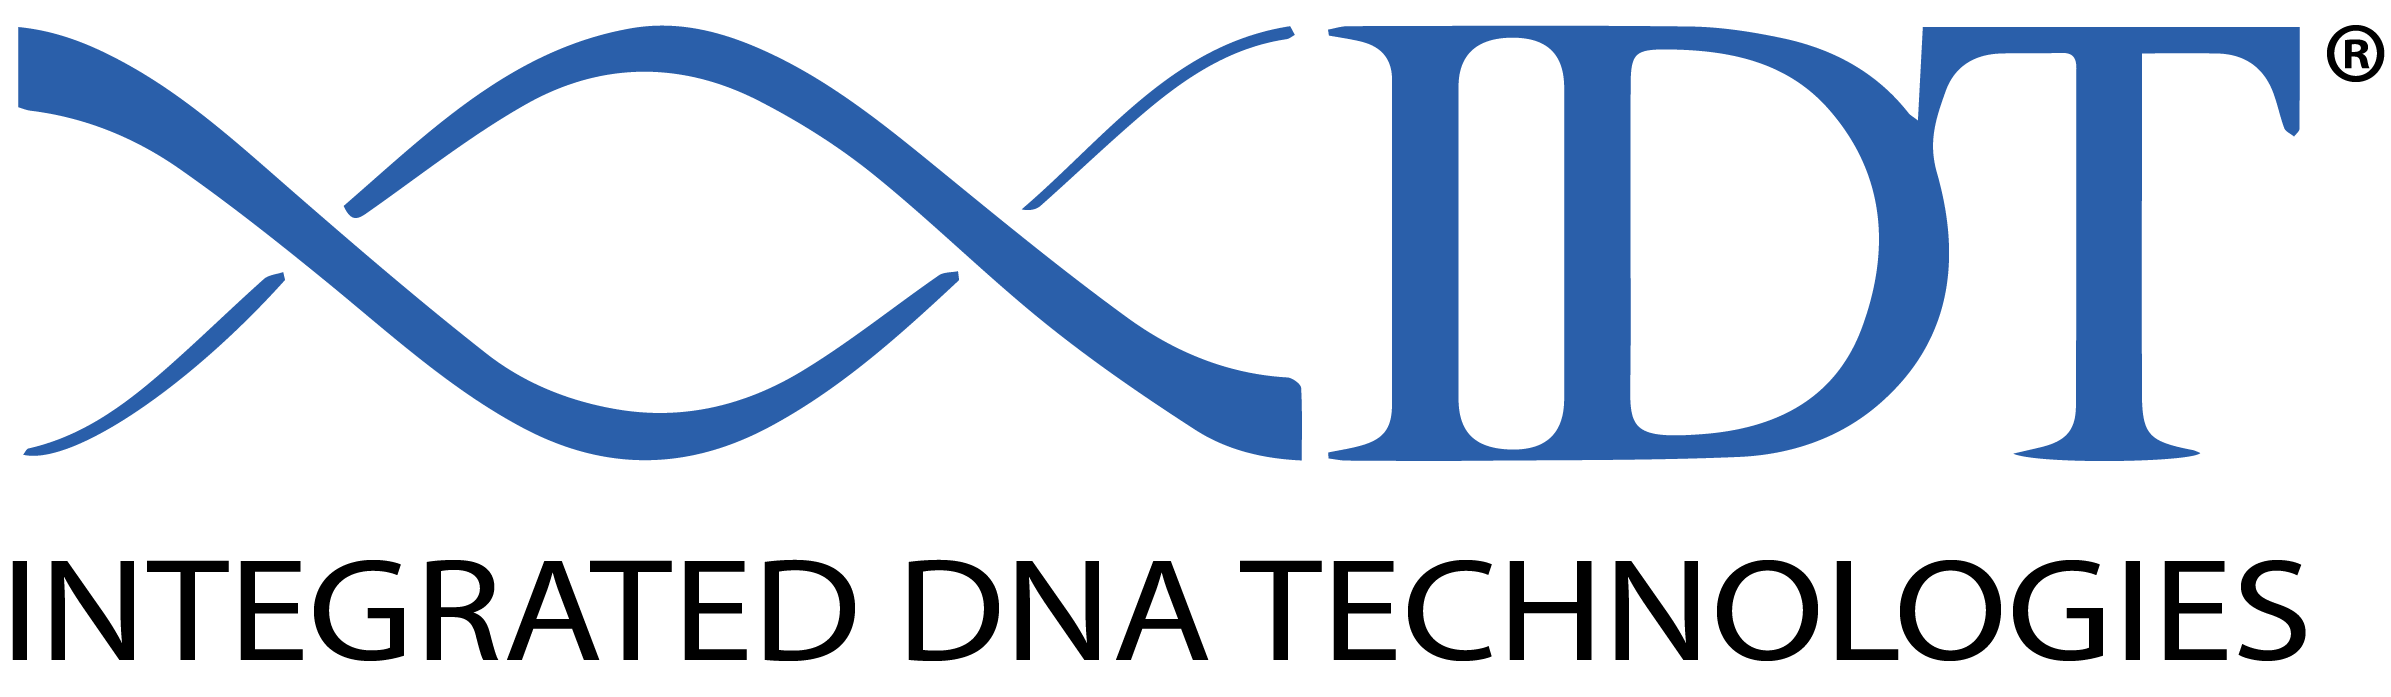 BIT-China IDT logo trans.png